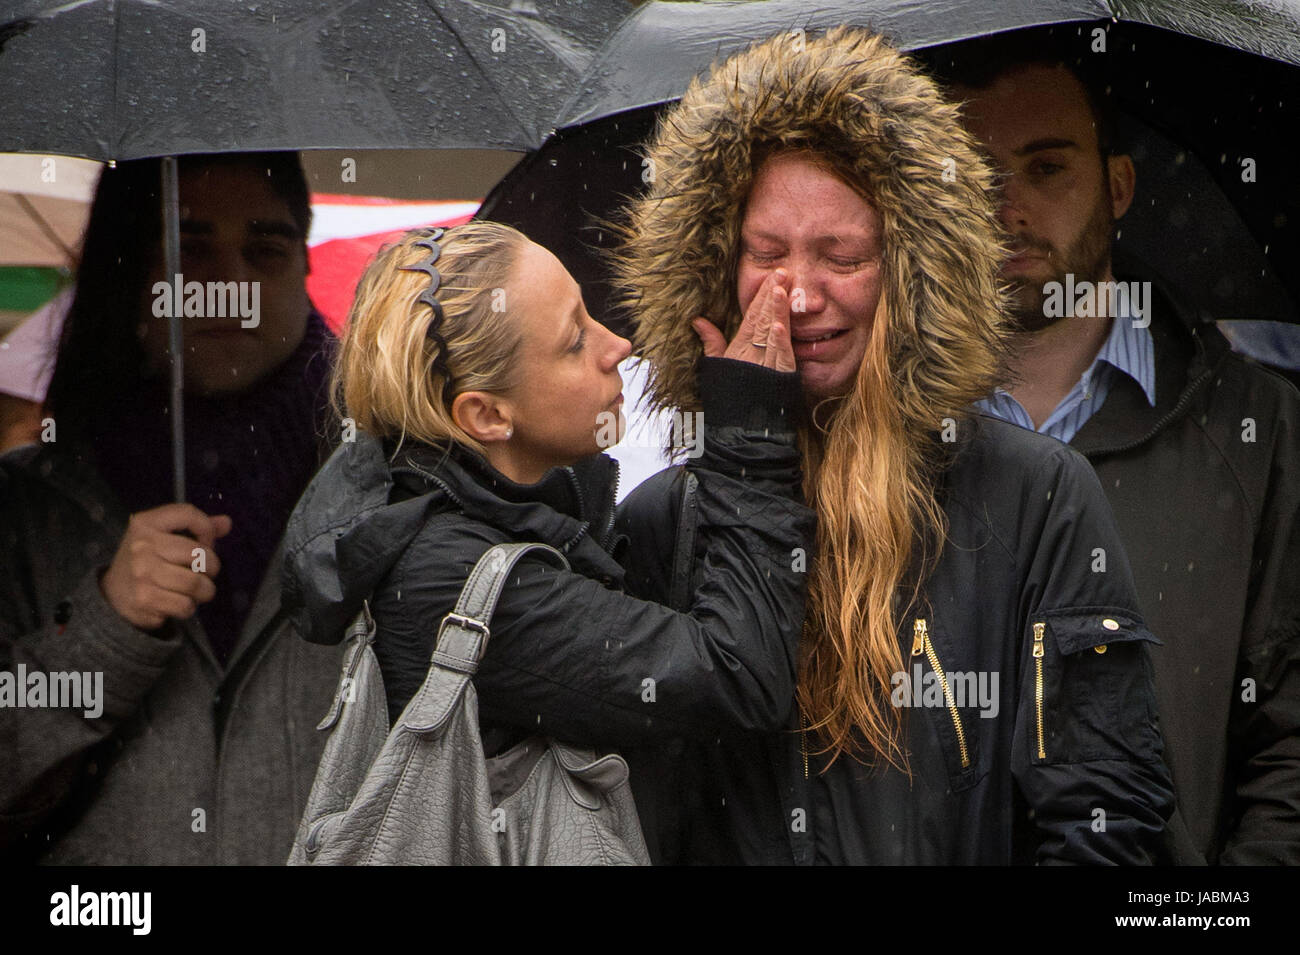 Deux femmes réconforter mutuellement pendant une minute de silence sur le pont de Londres en l'honneur de l'attaque terroriste victimes décédées dans l'indignation samedi. Banque D'Images